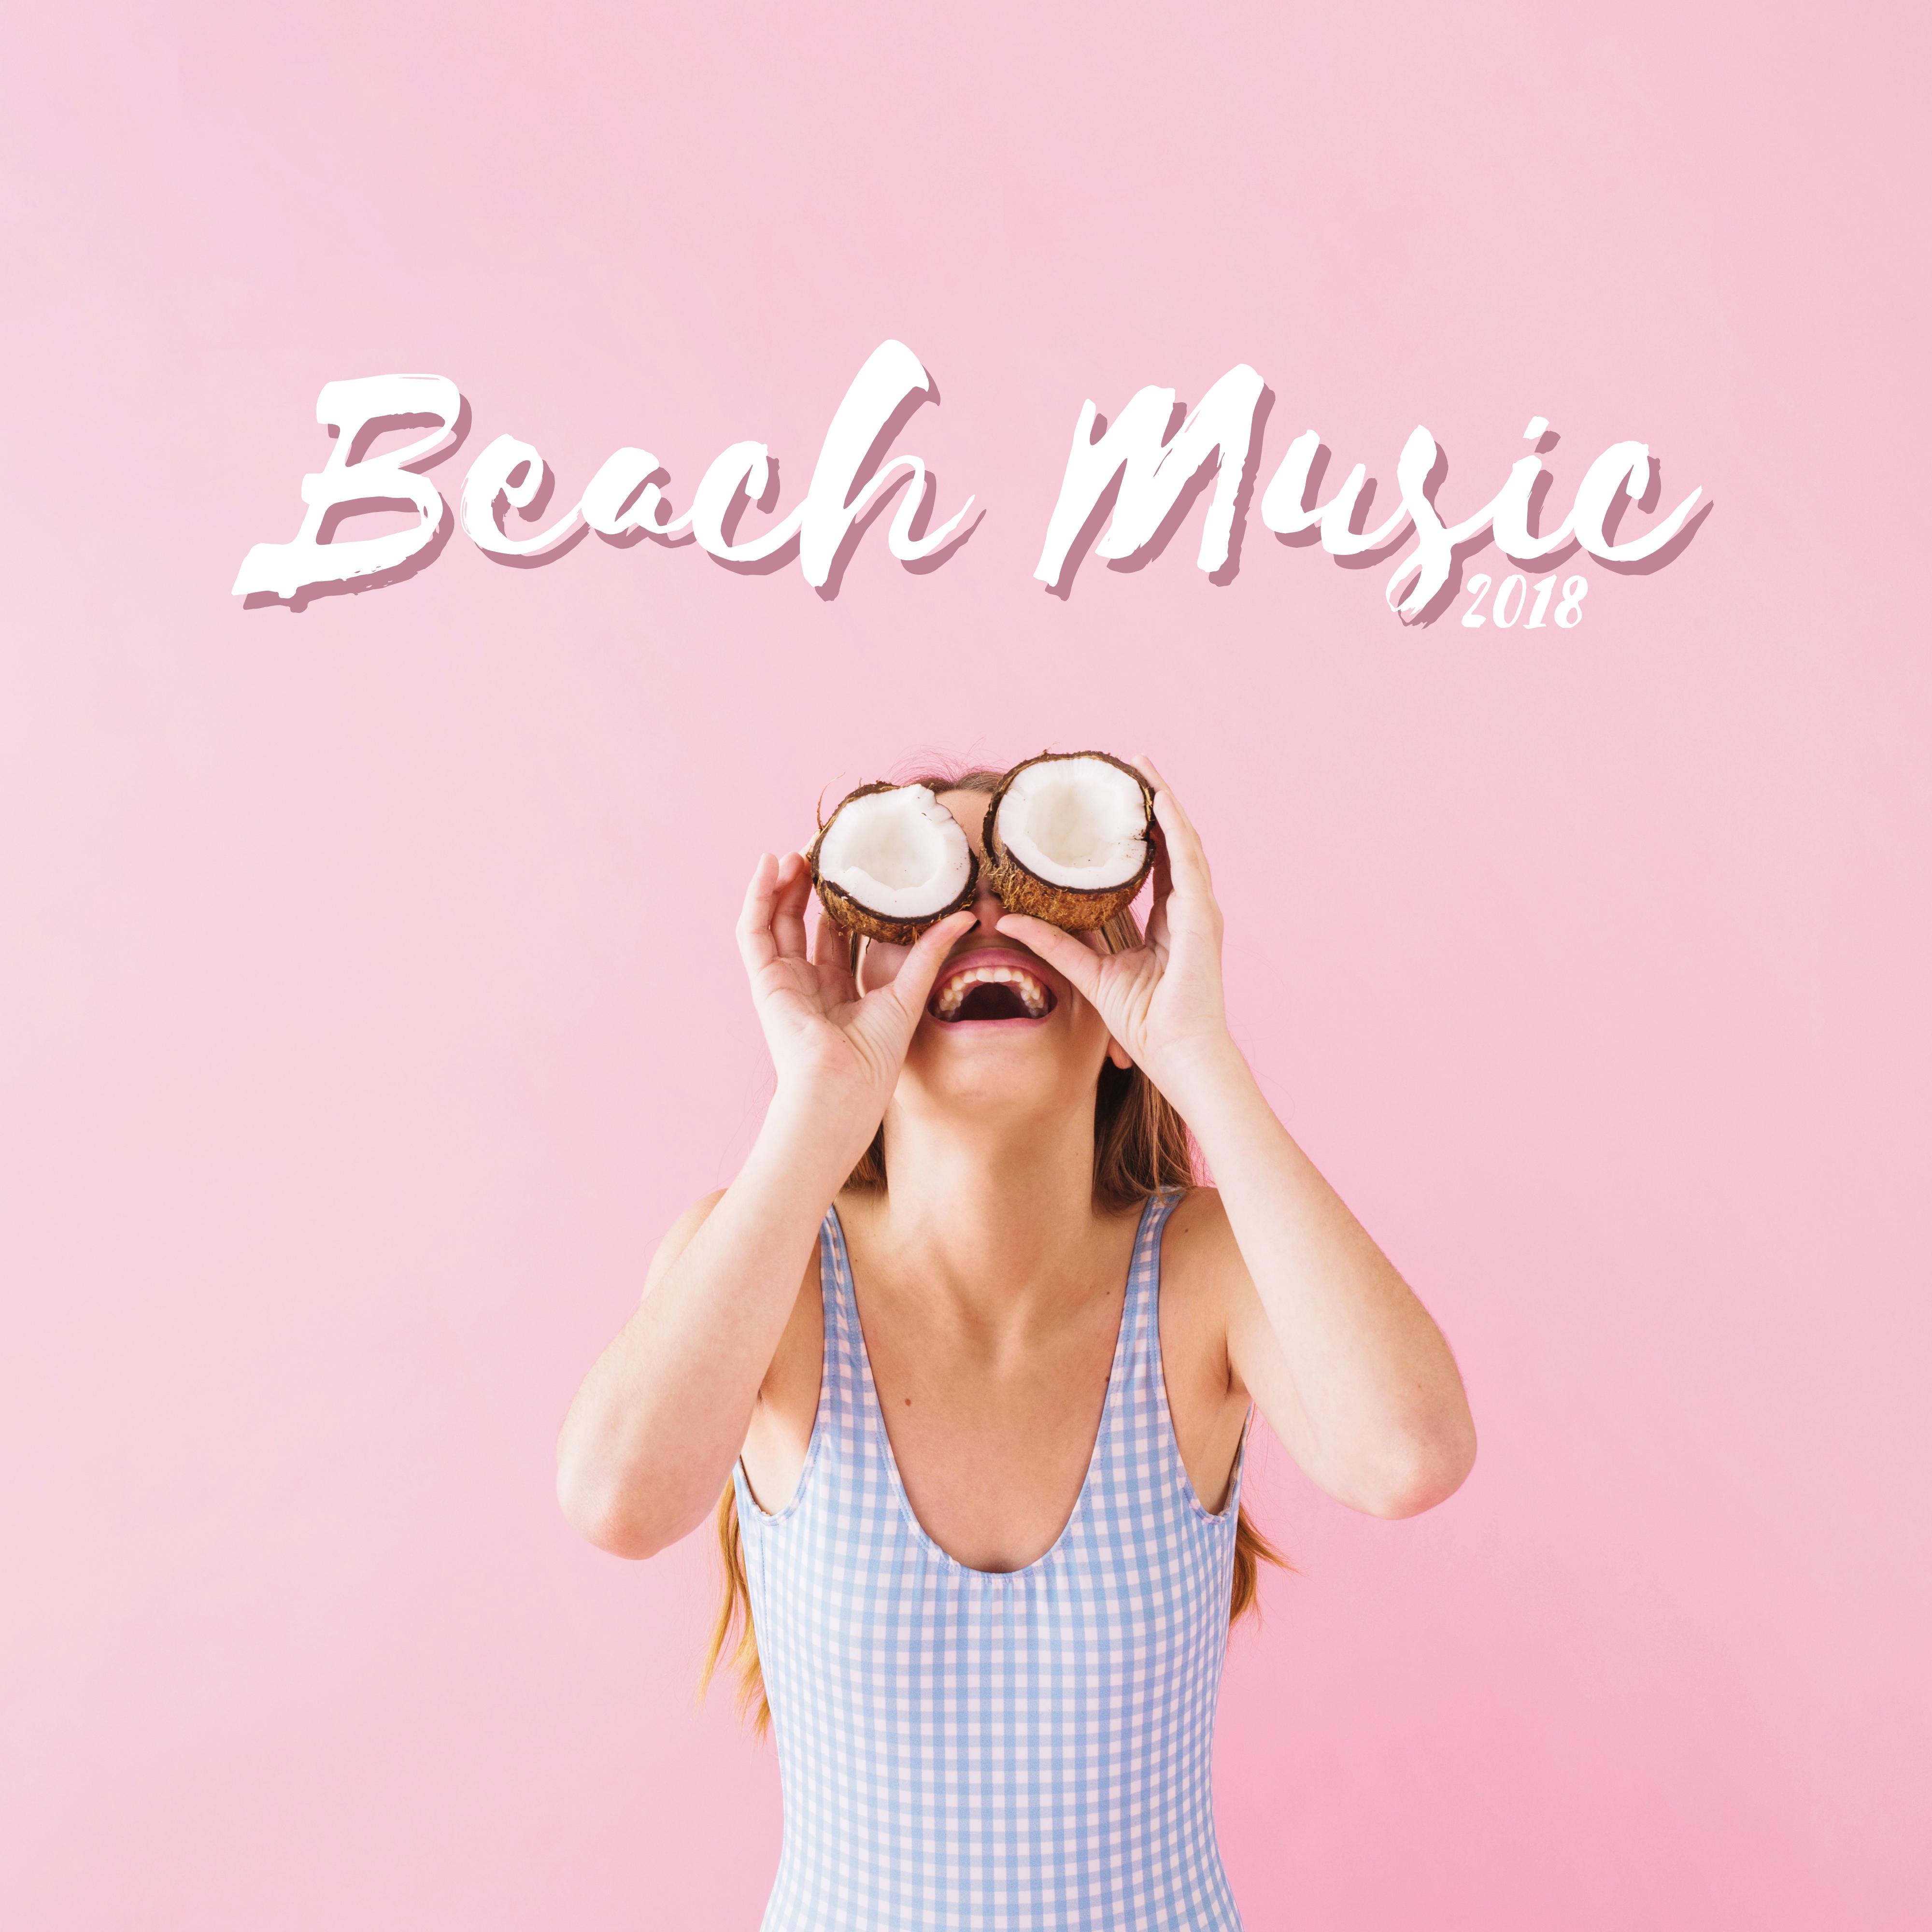 Beach Music 2018